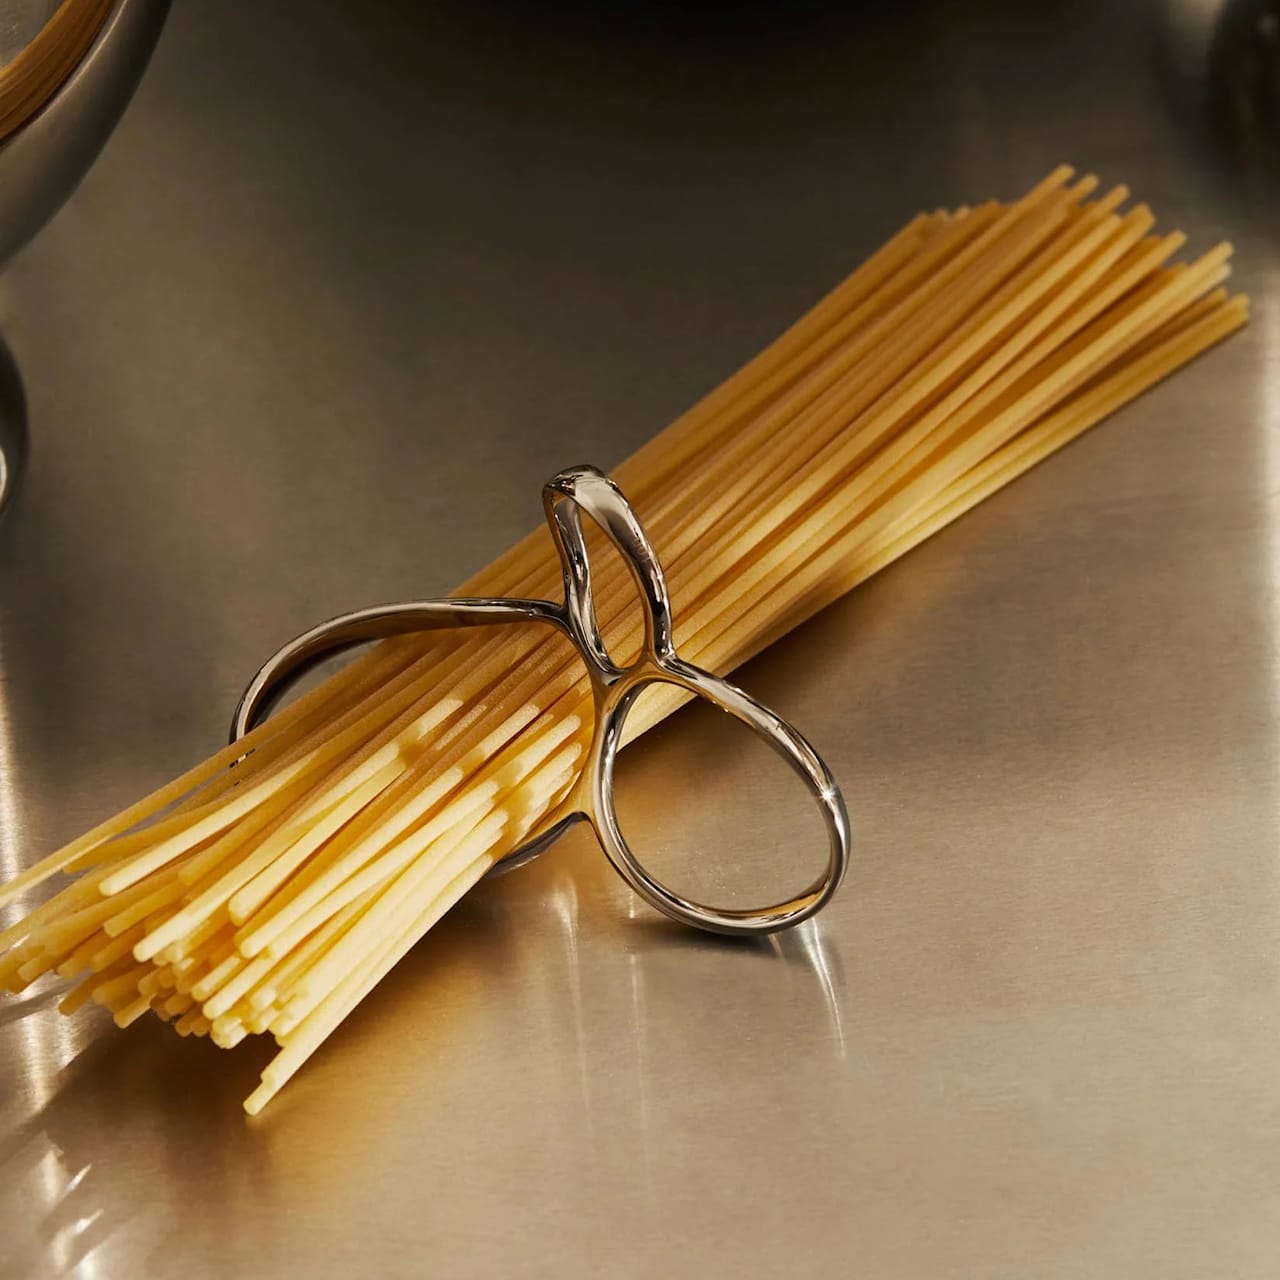 Voile Spaghetti measure